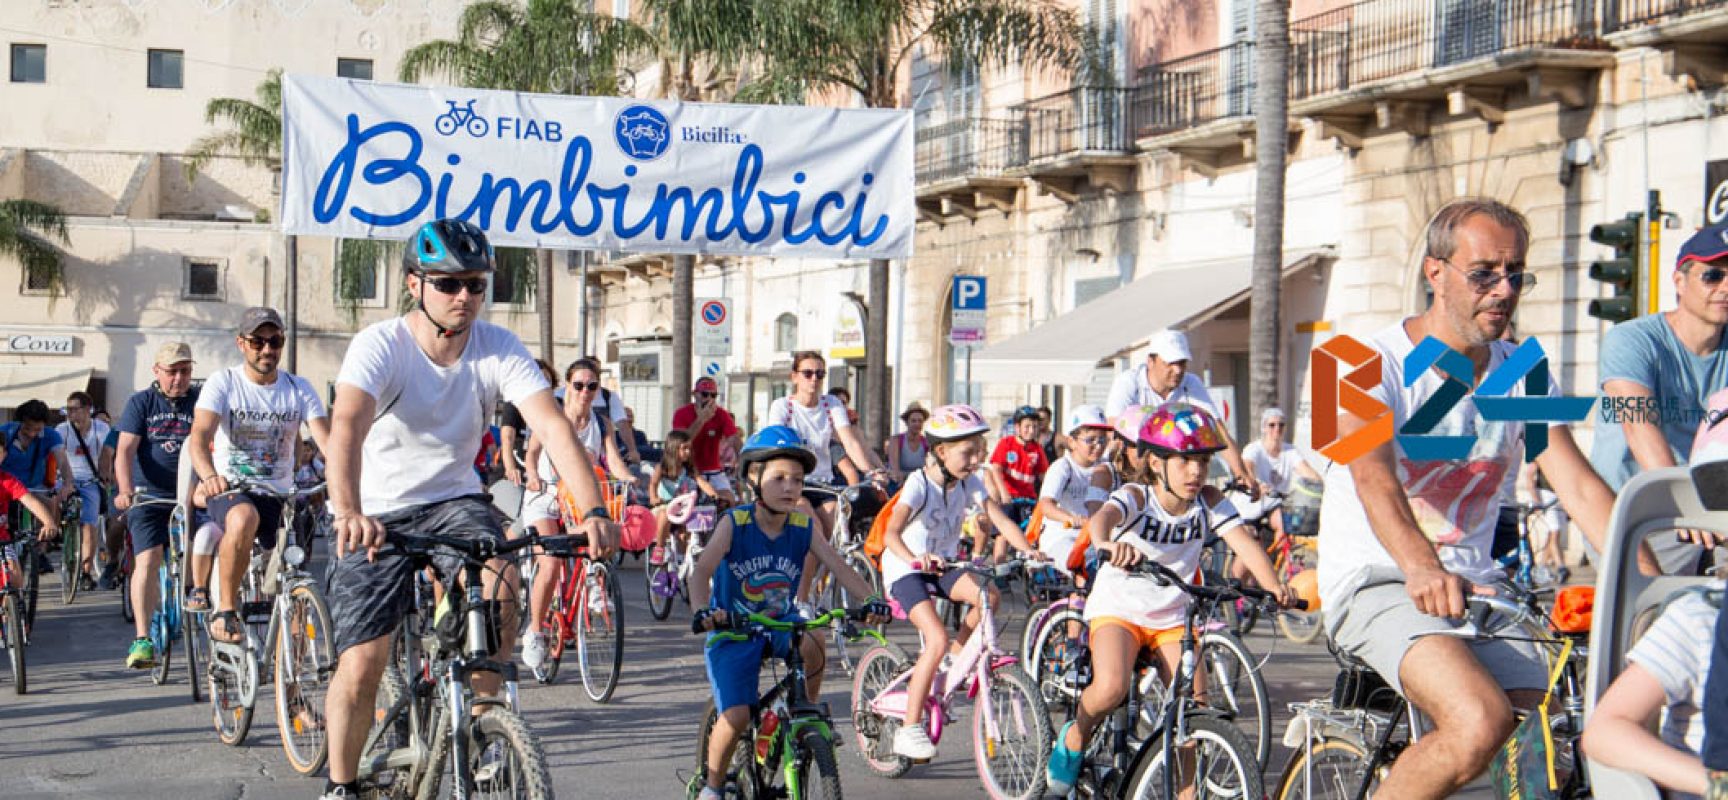 Bimbimbici, grande successo per la biciclettata tra le vie cittadine / FOTO